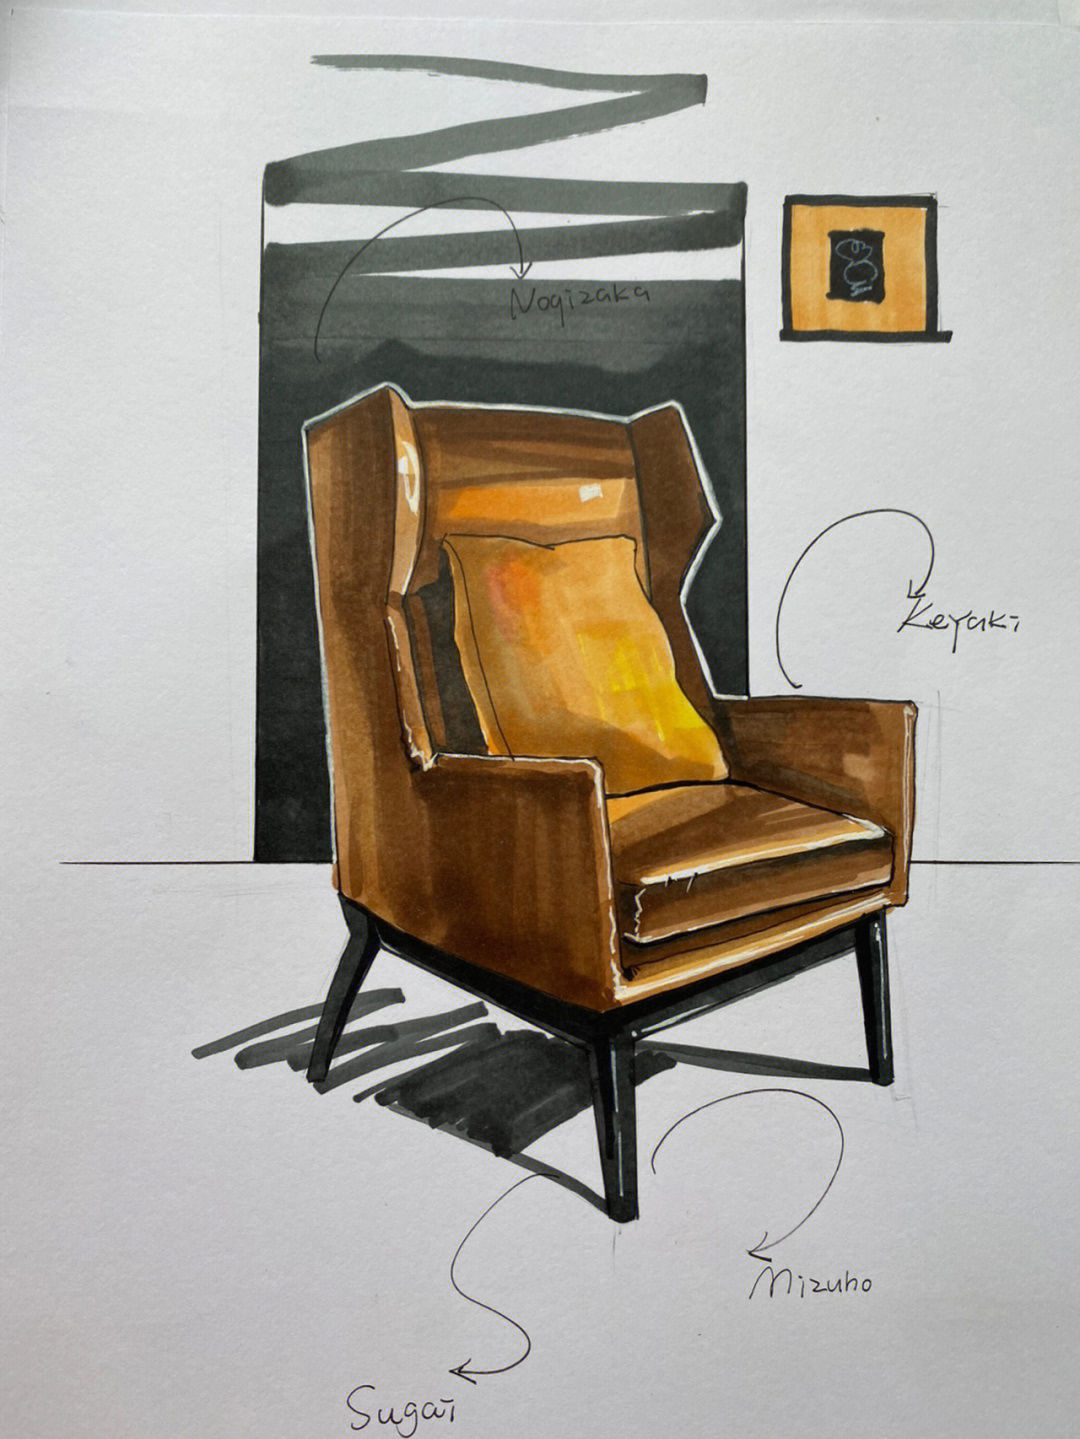 椅子设计手绘图马克笔图片